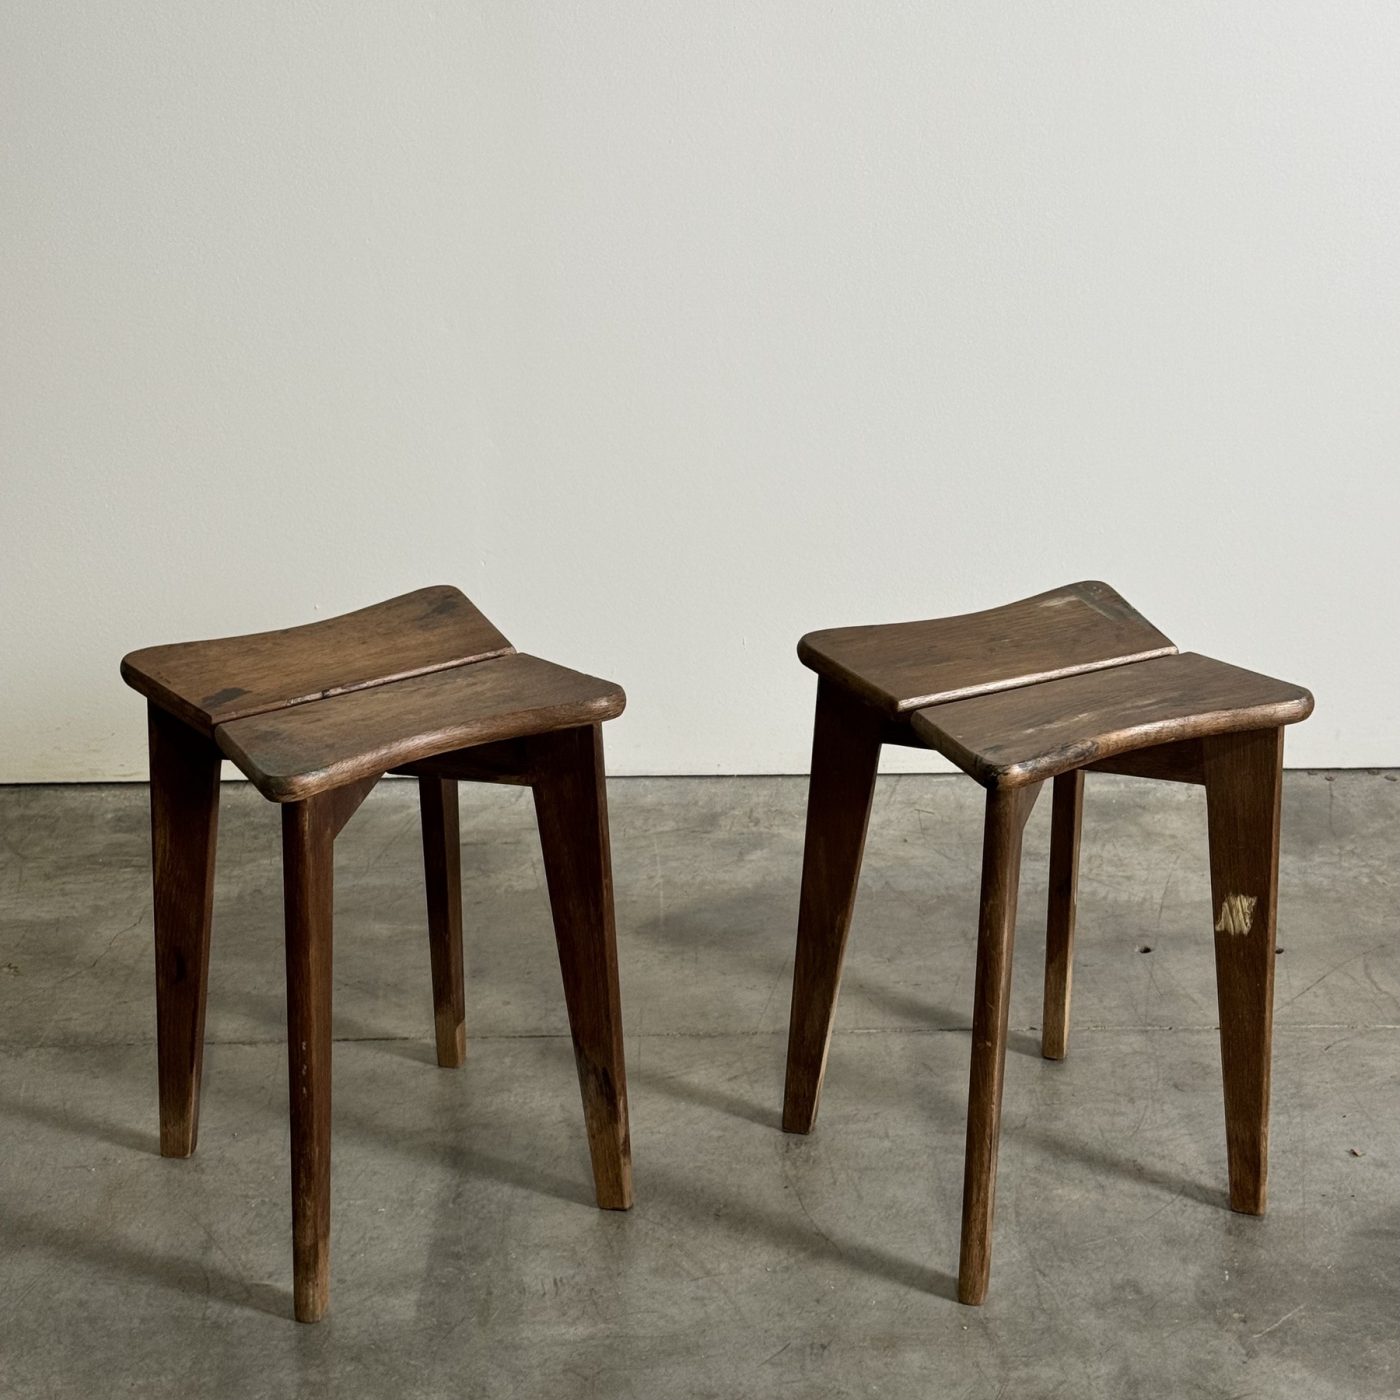 objet-vagabond-gascoin-stools0004